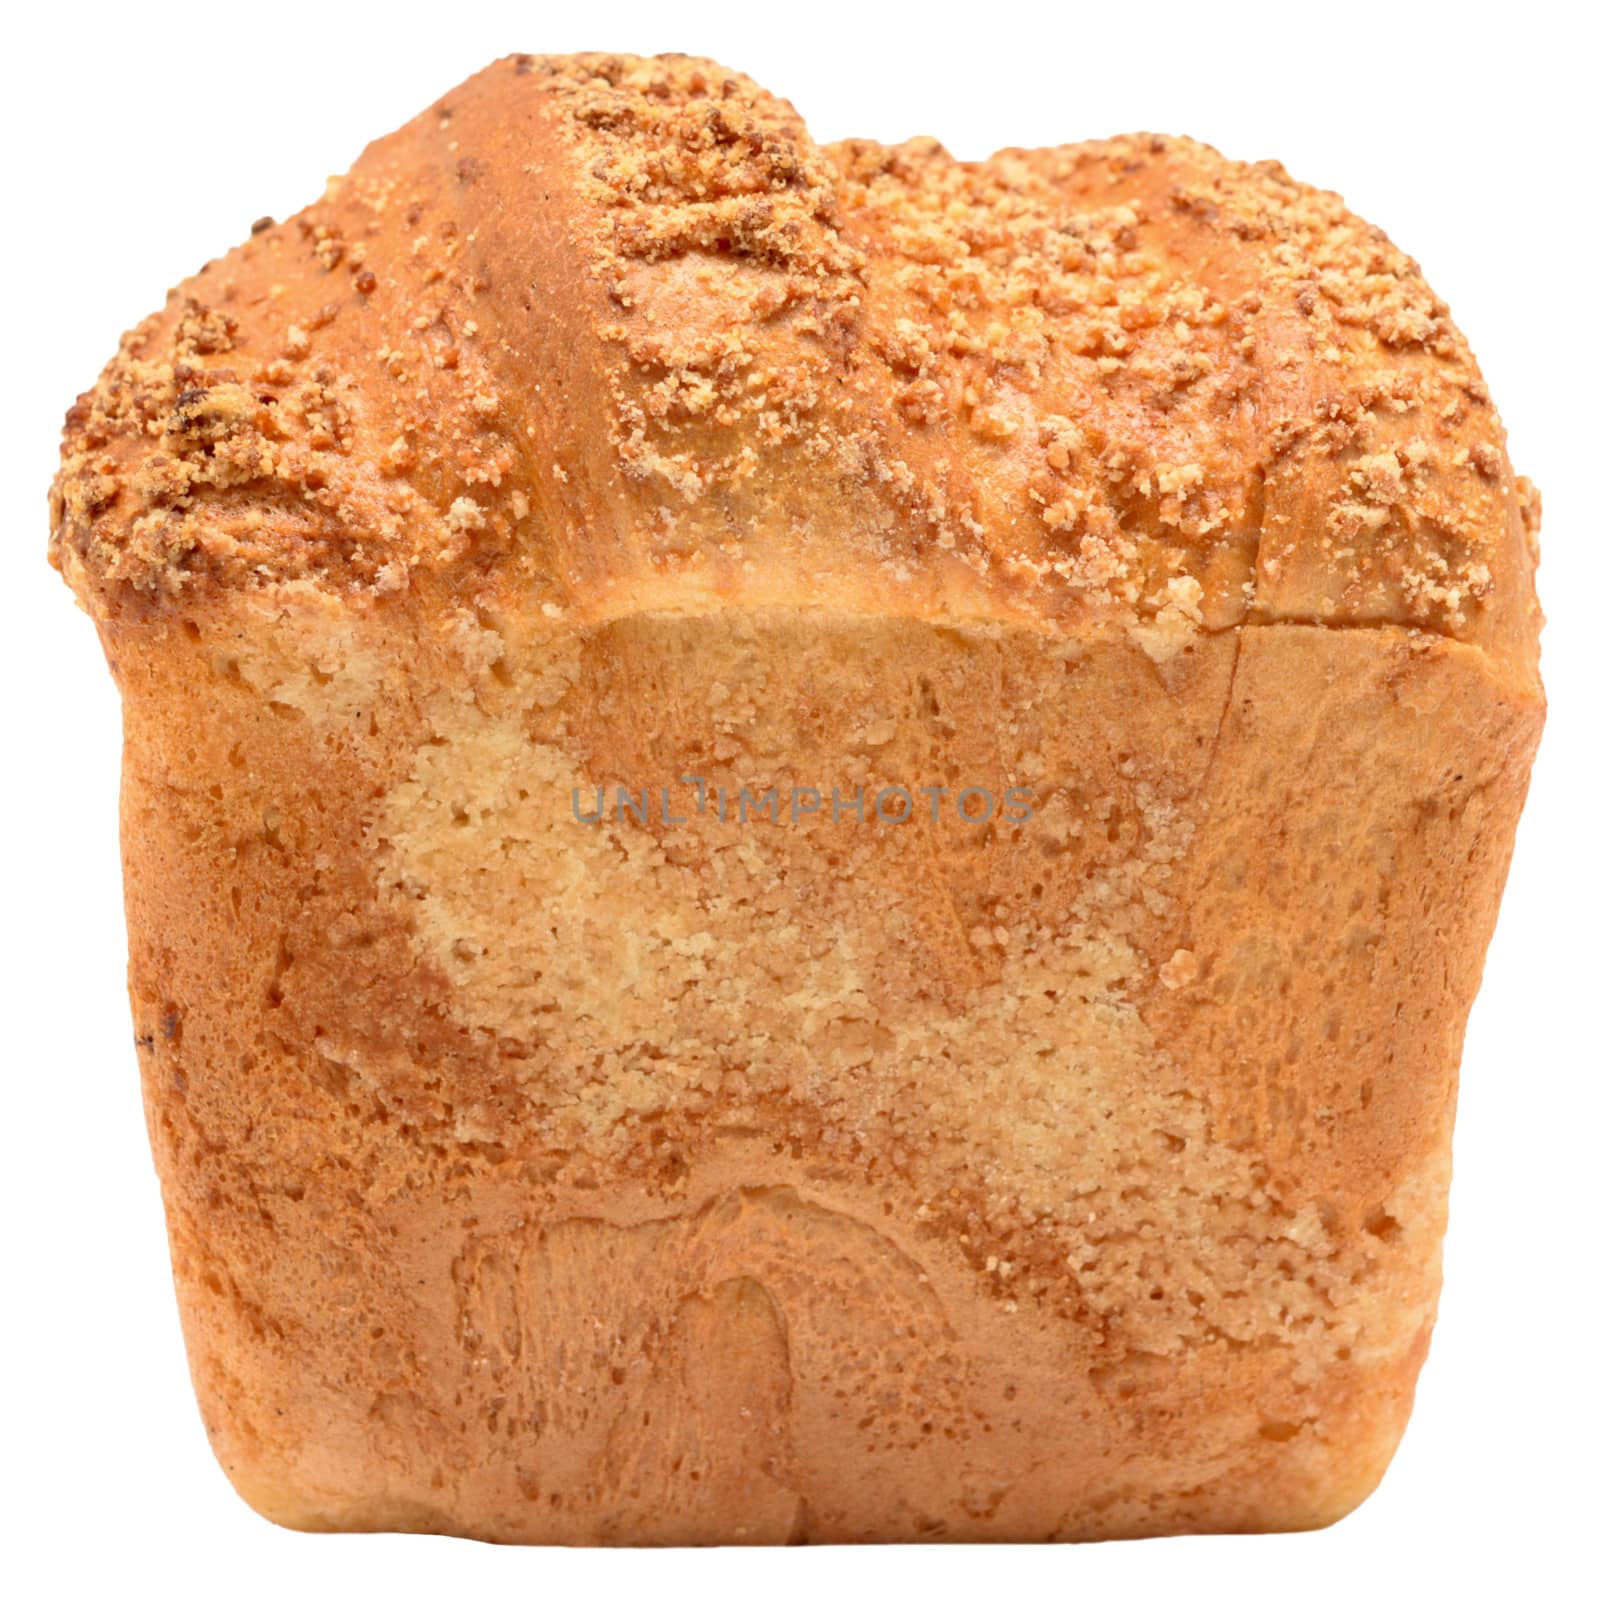 bread by kostikla